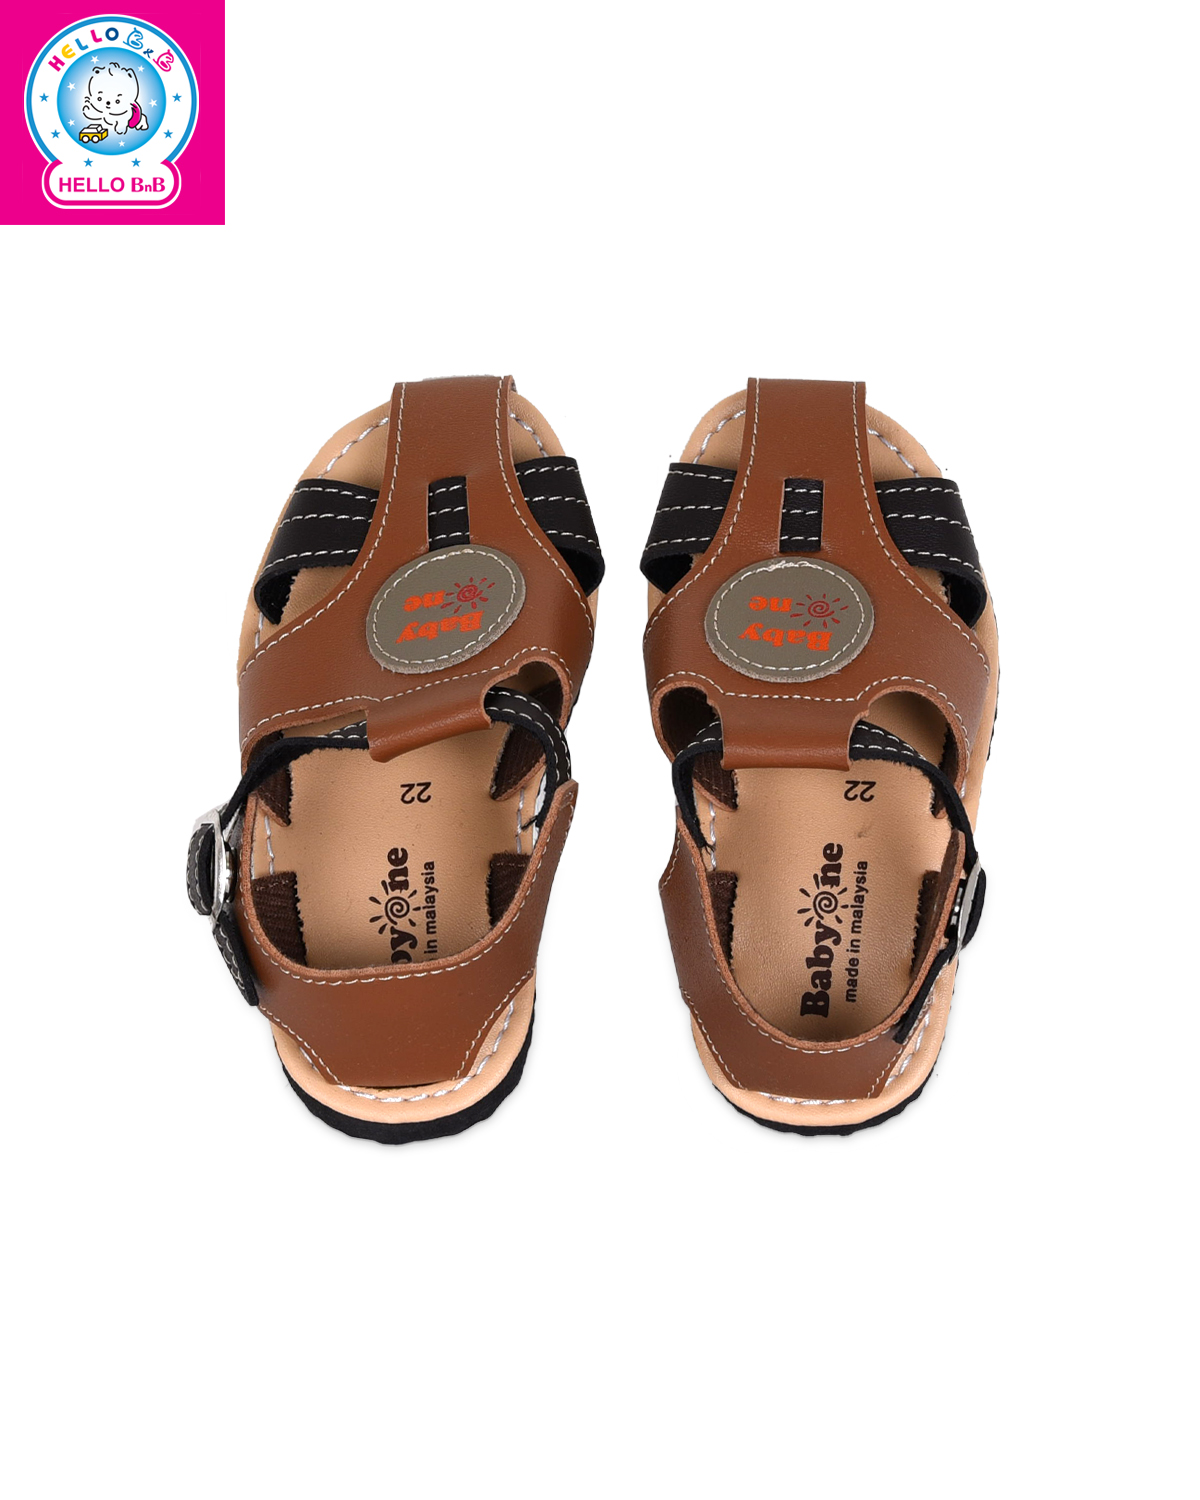 Giày sandal BabyOne 0806 size 20 Brown